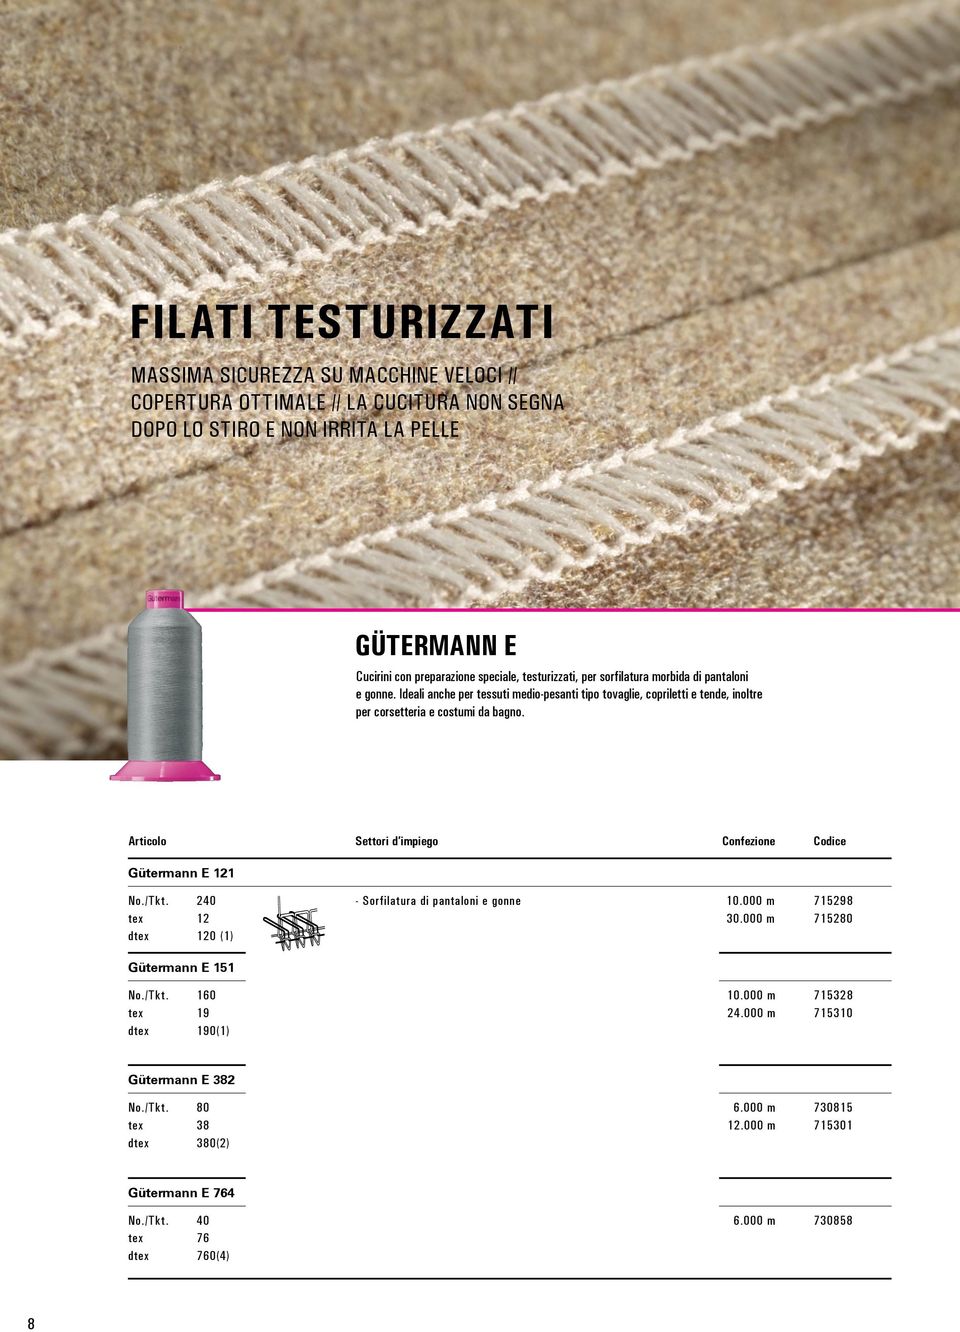 Ideali anche per tessuti medio-pesanti tipo tovaglie, copriletti e tende, inoltre per corsetteria e costumi da bagno. Gütermann E 121 No./Tkt.